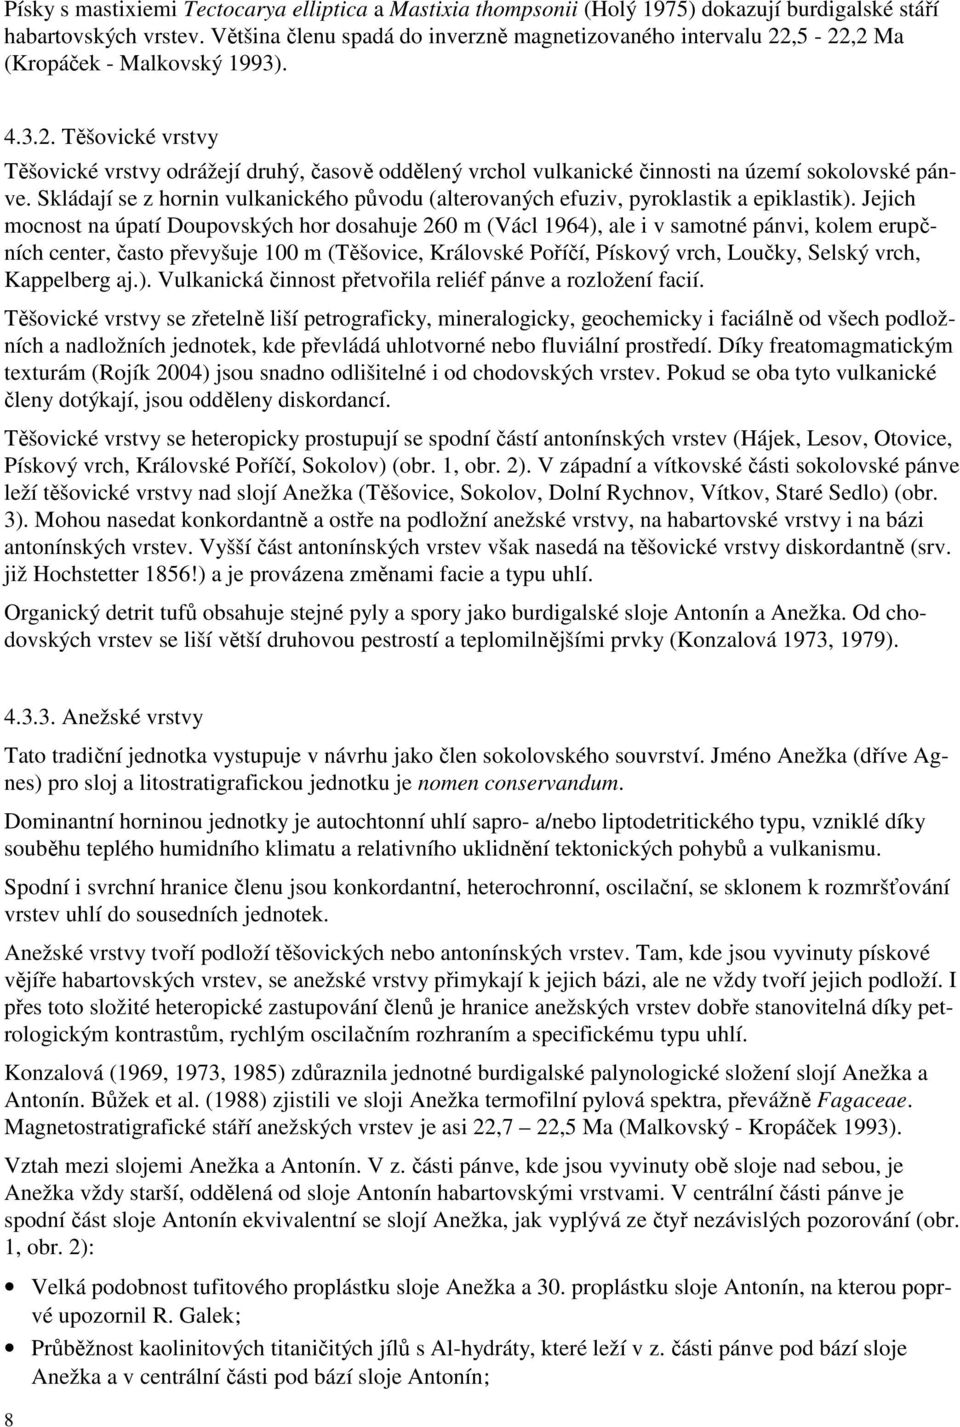 Návrh stratigrafického členění terciéru sokolovské pánve Petr Rojík,  Sokolovská uhelná, a.s. (Zpravodaj Hnědé uhlí, 2/2005, 16-34, Most. - PDF  Stažení zdarma